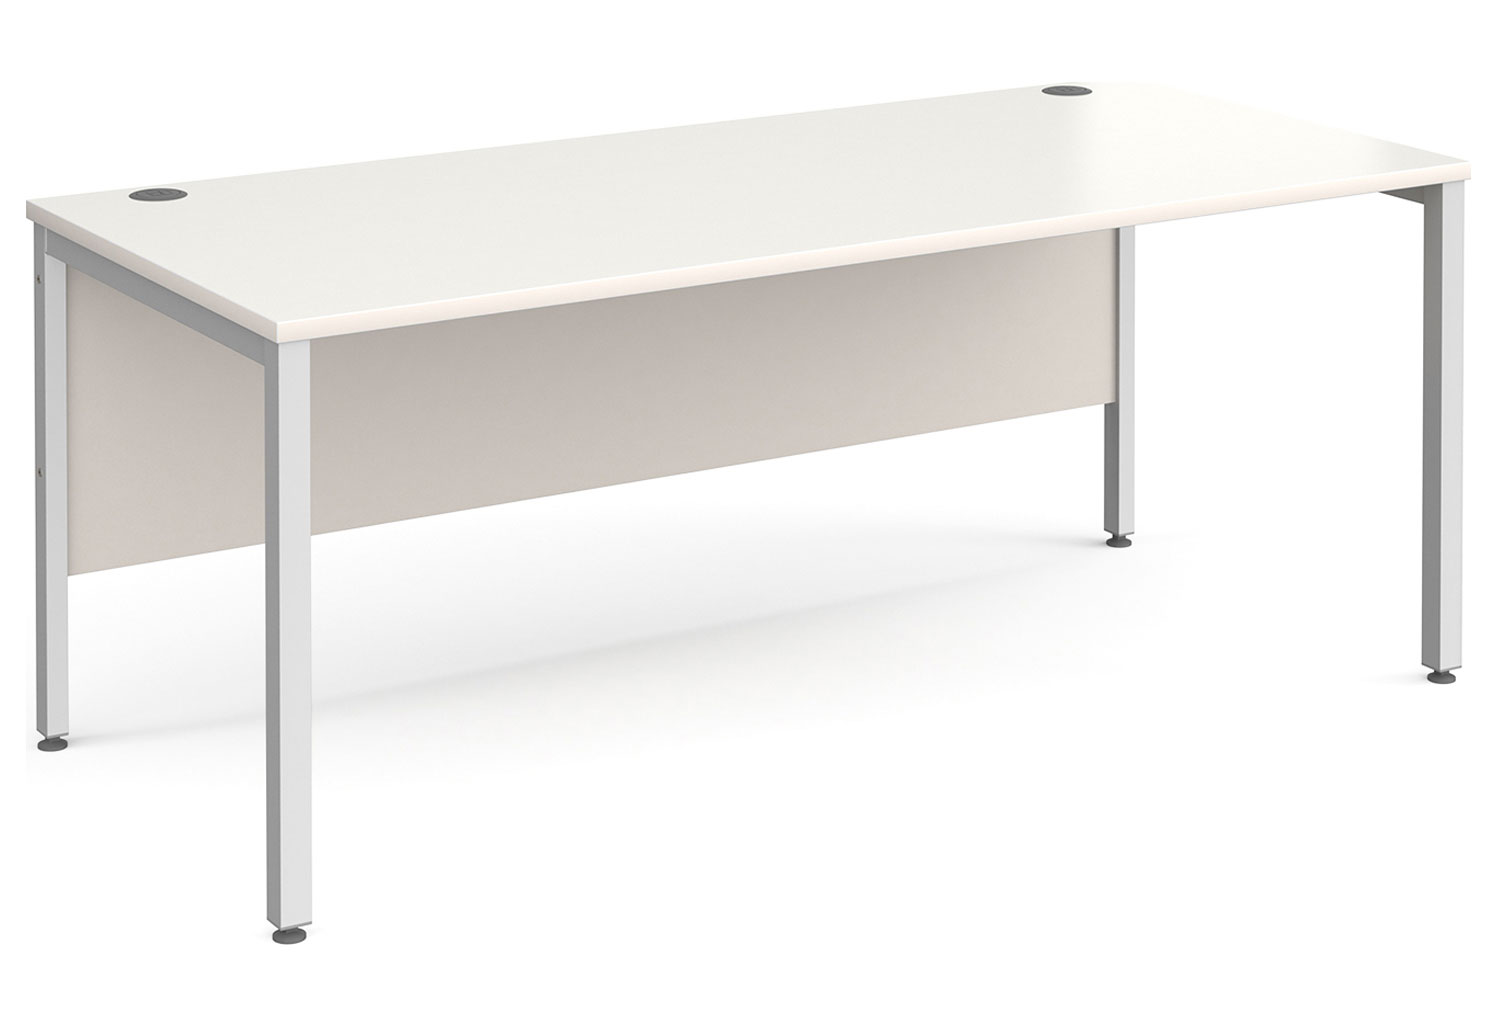 All White Bench Rectangular Office Desk, 180wx80dx73h (cm), Fully Installed